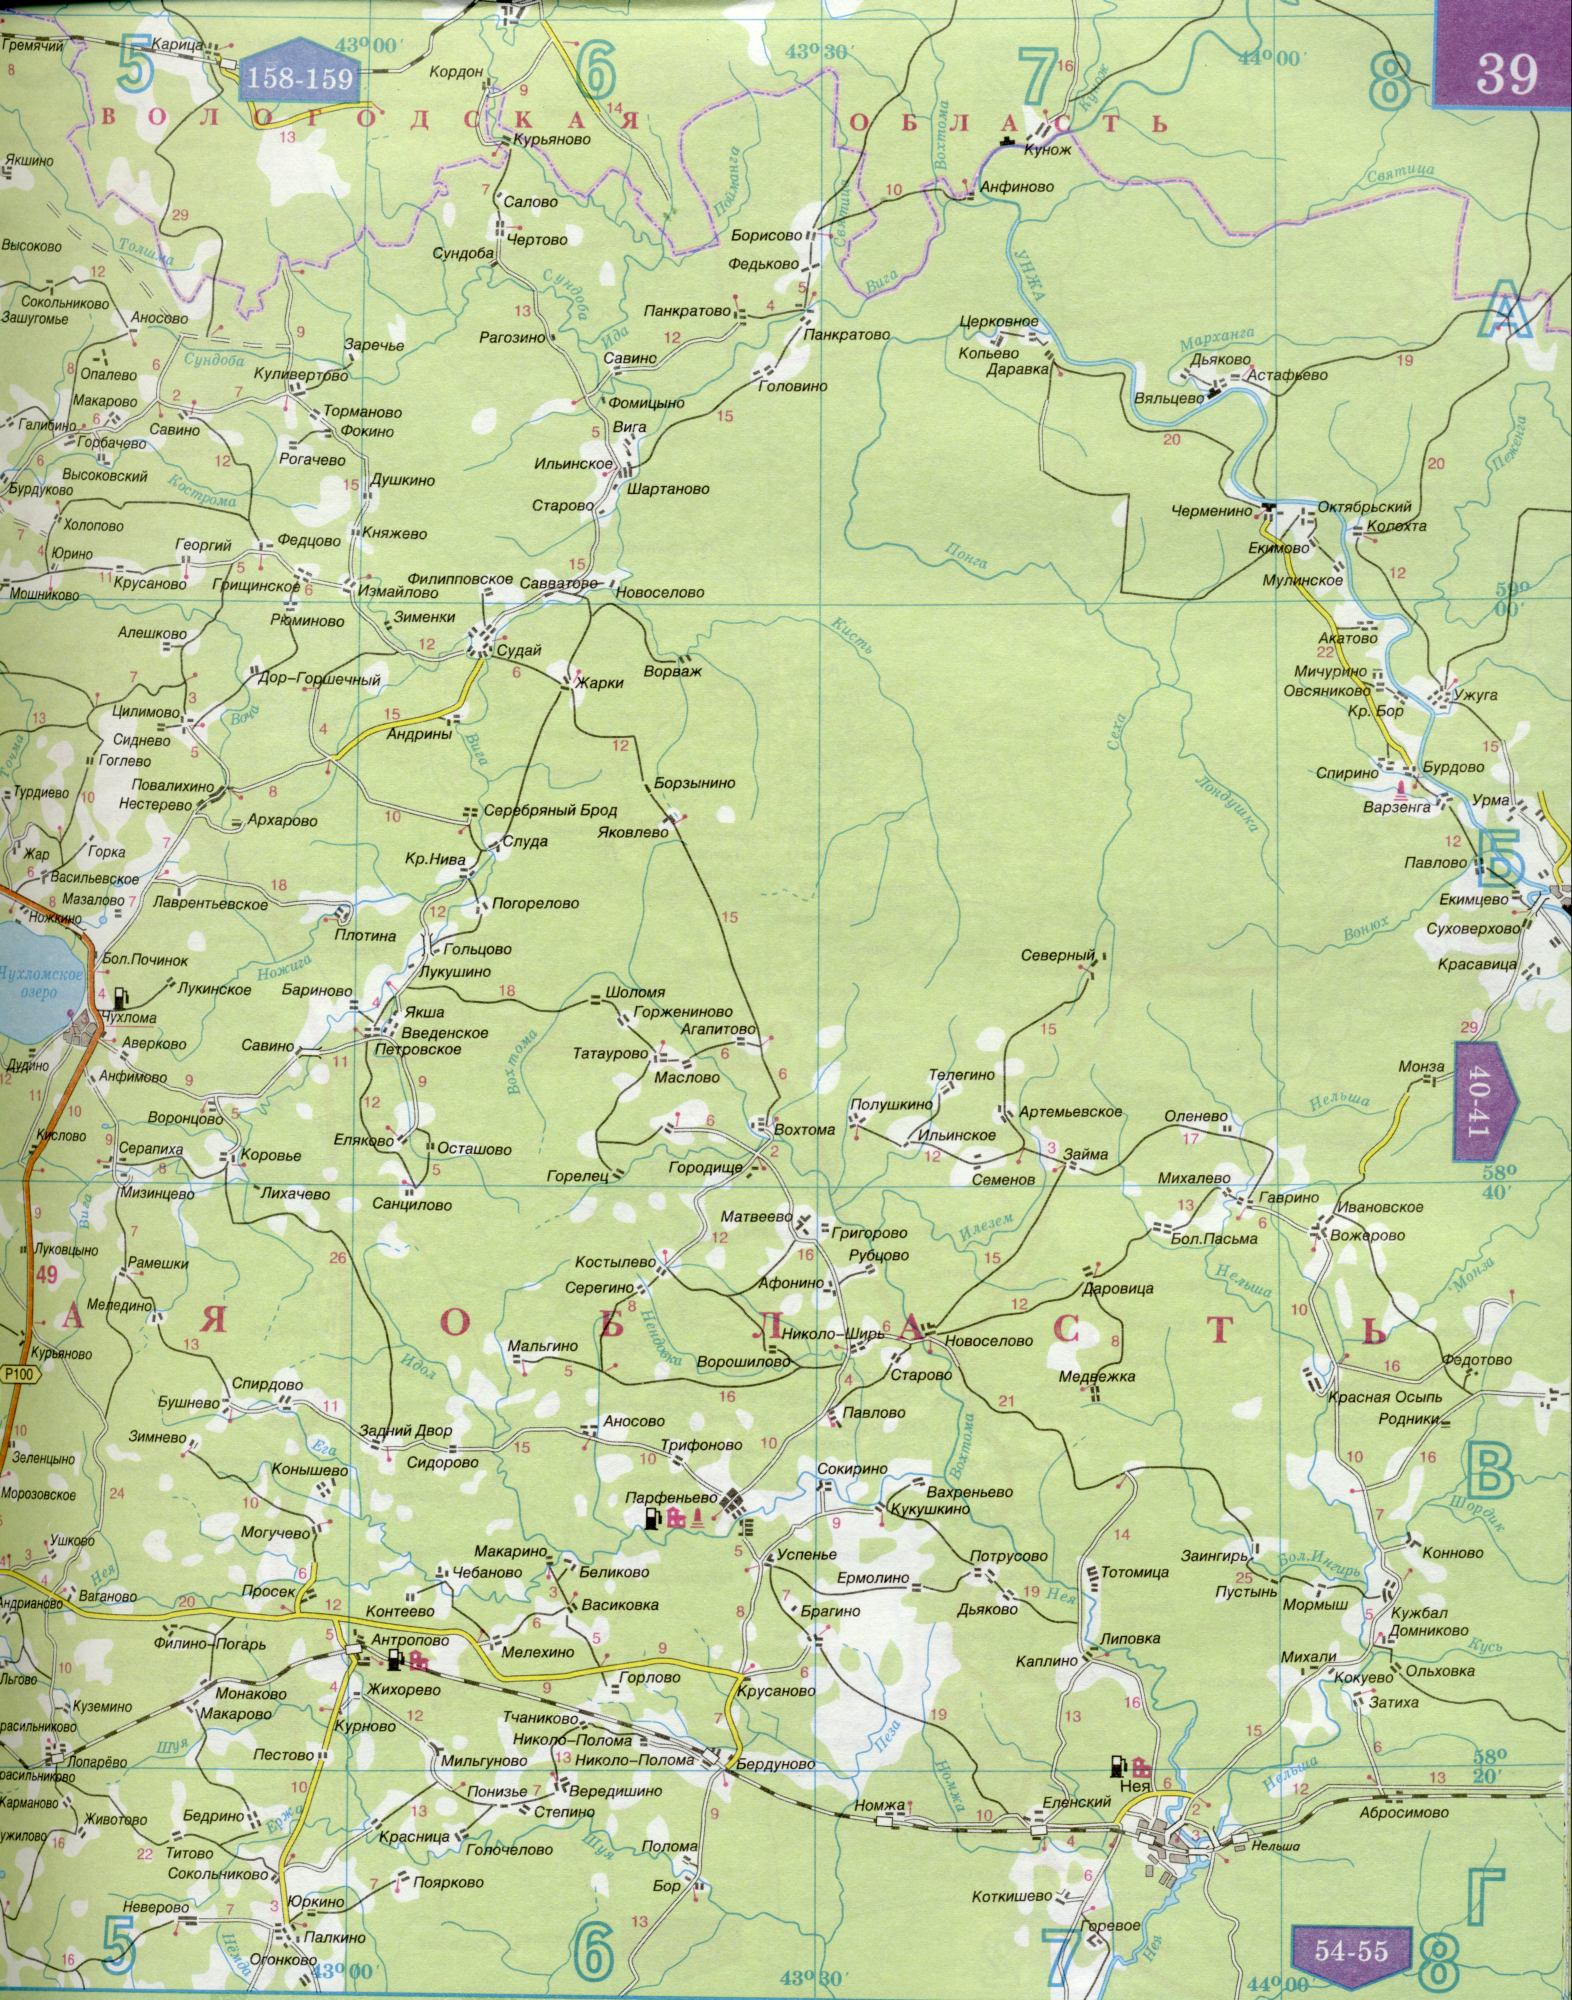 Карта Костромской области 1см=5км. Карта автомобильных дорог Костромская область. Скачать бесплатно подробную карту , B0 - Унжа